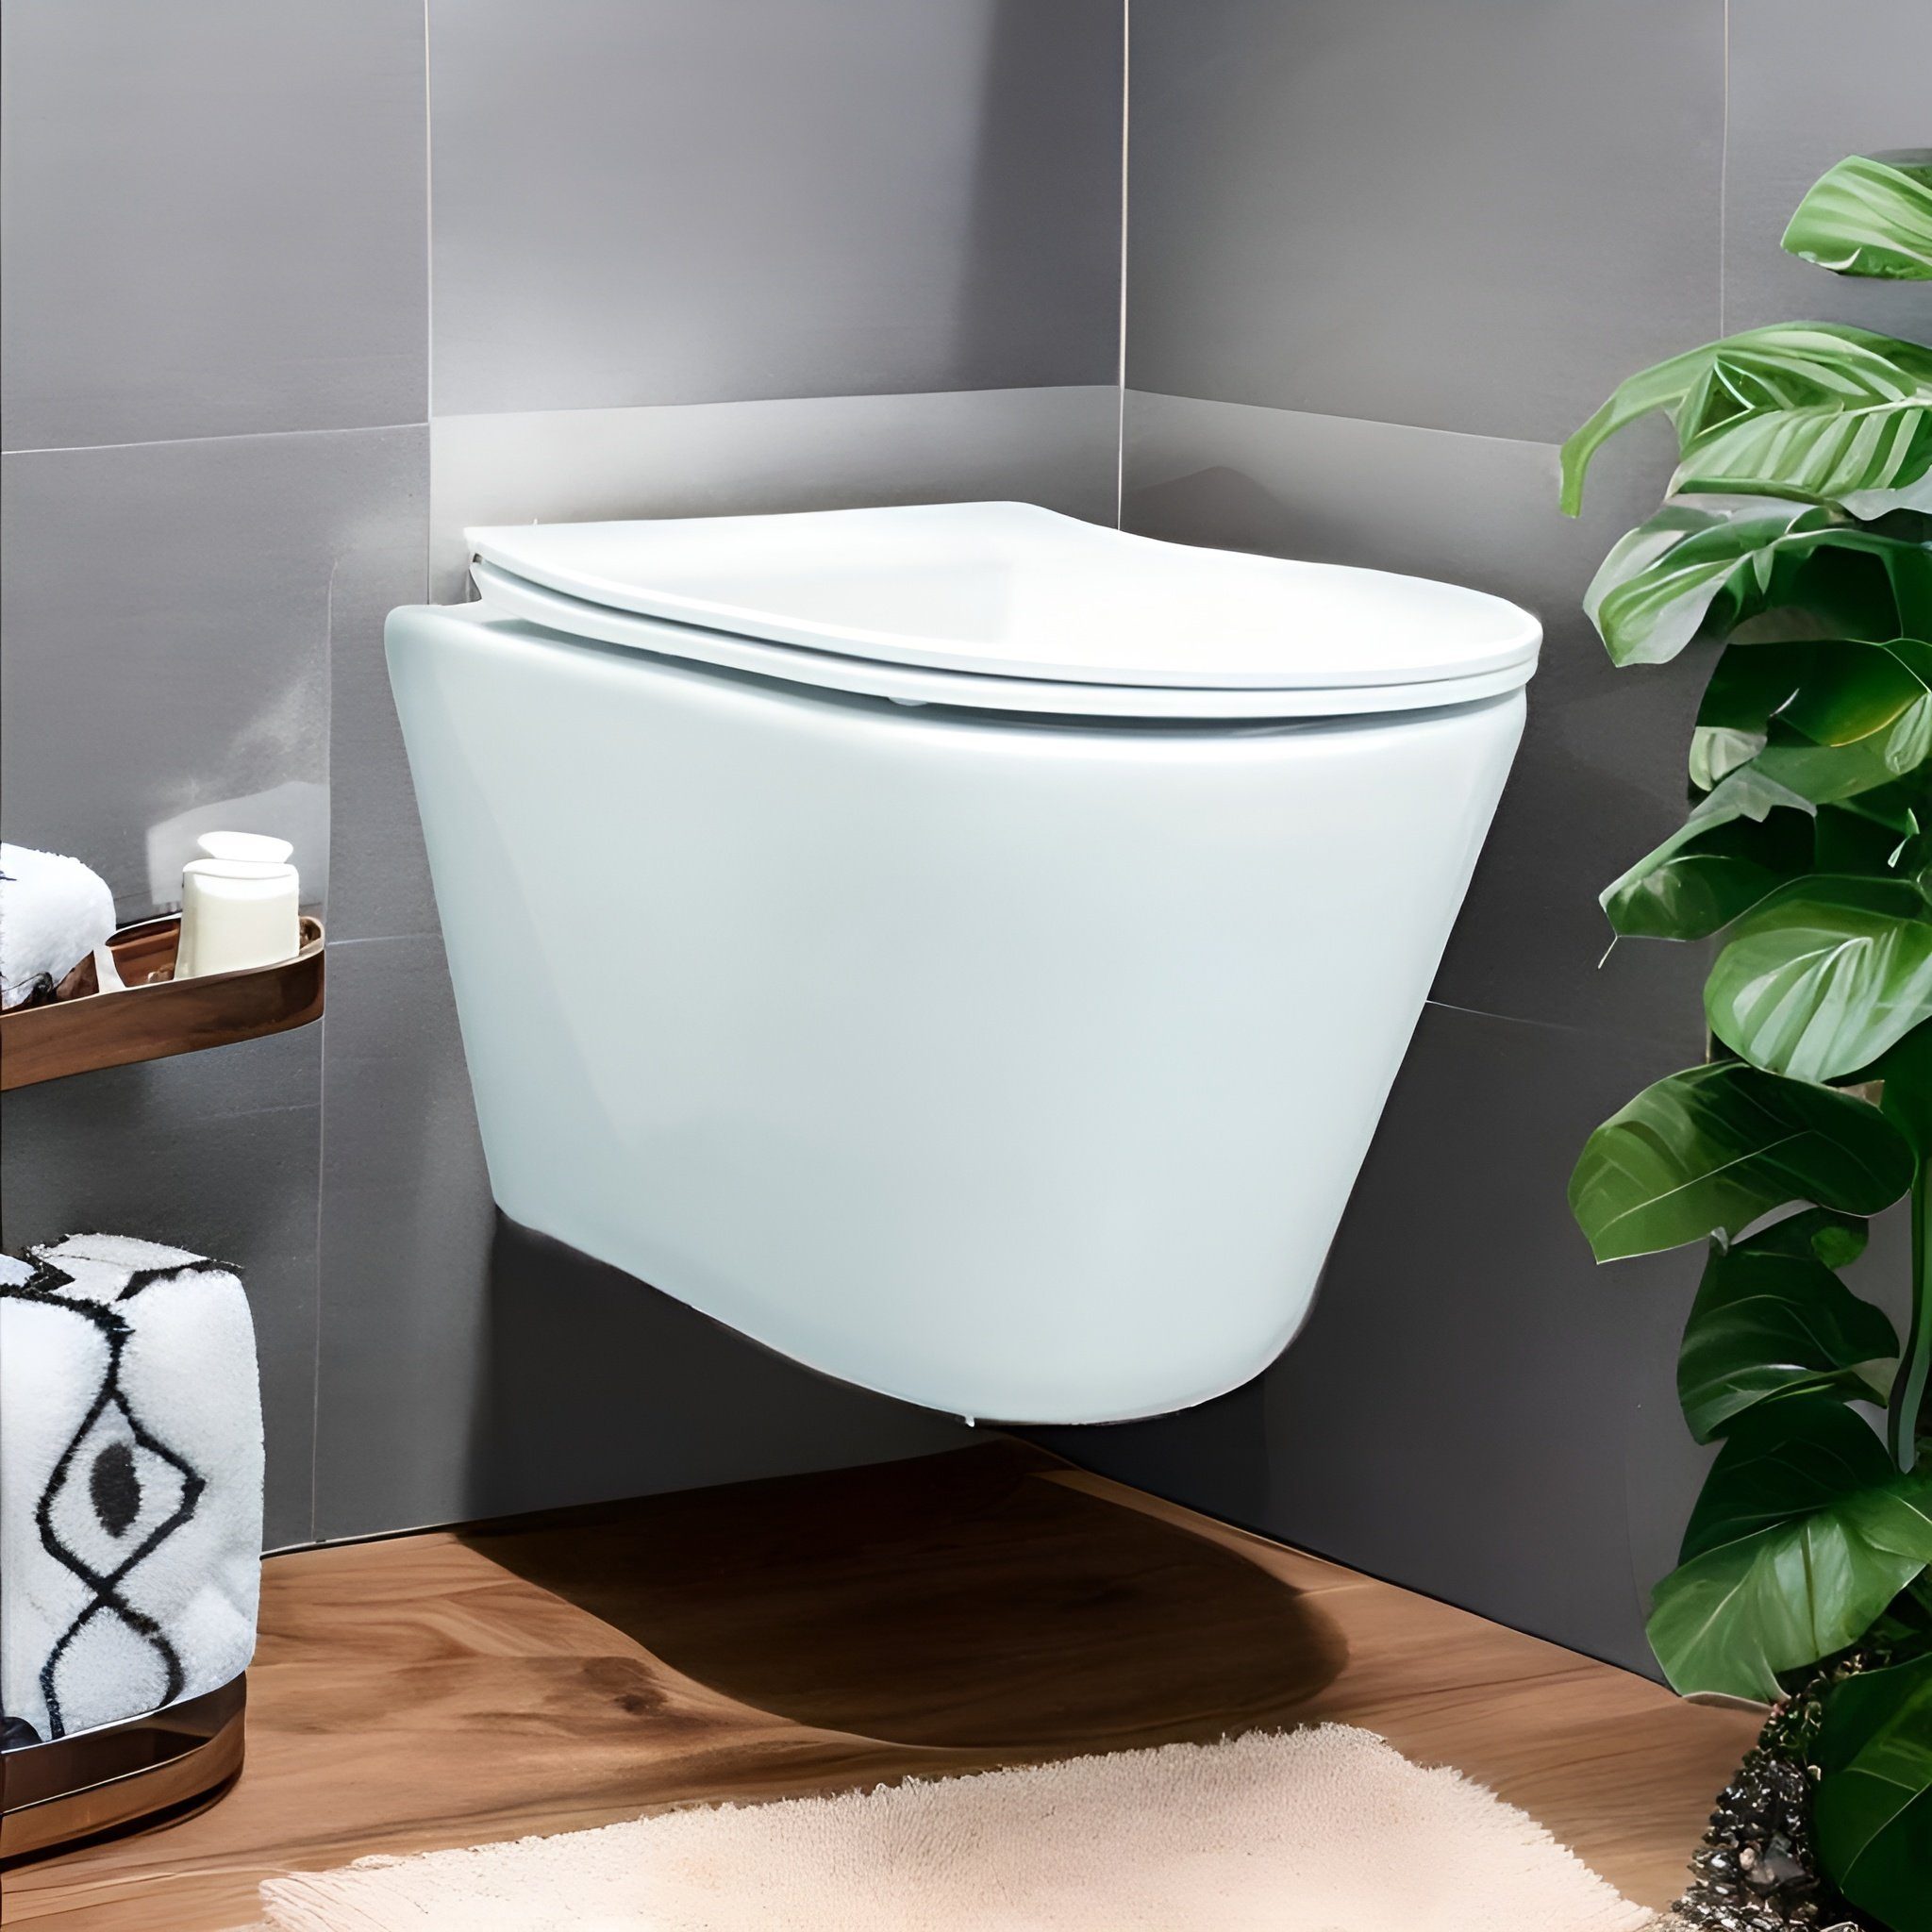 KOLMAN Tiefspül-WC Spülrandlos Wand-WC Milos, Soft-close Schallschutzmatte und WC-Sitz Slim Weiß, mit